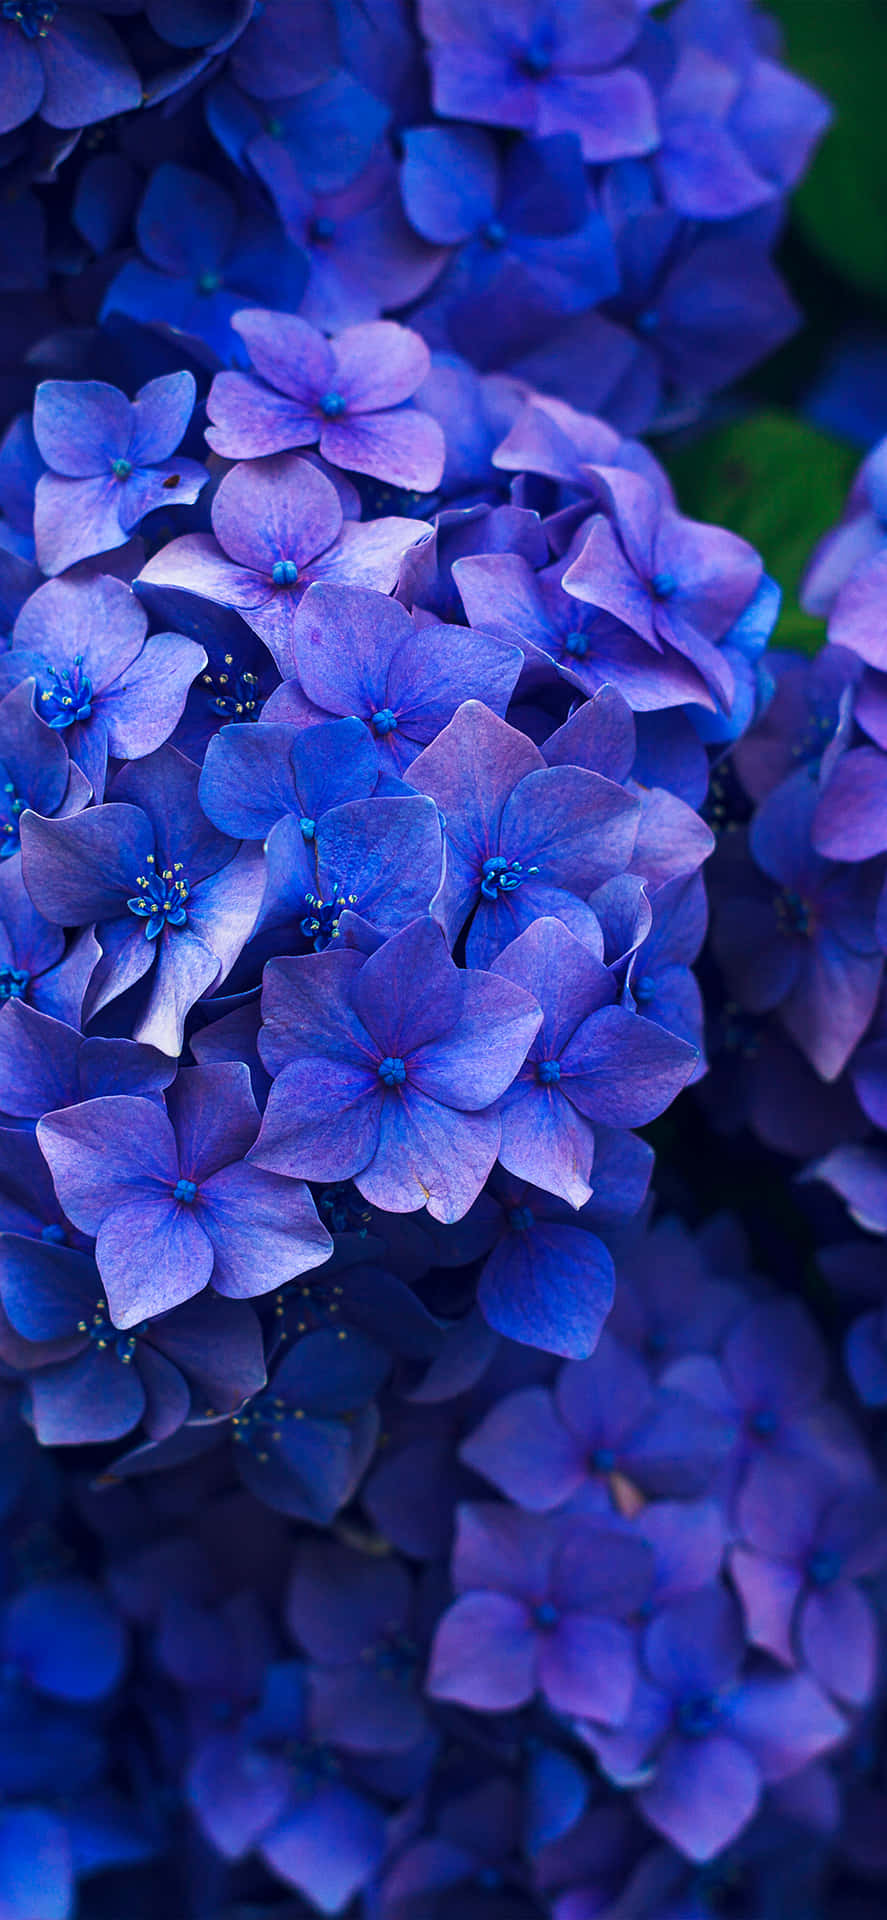 Hydrangea Dark Blue Flowers Picture